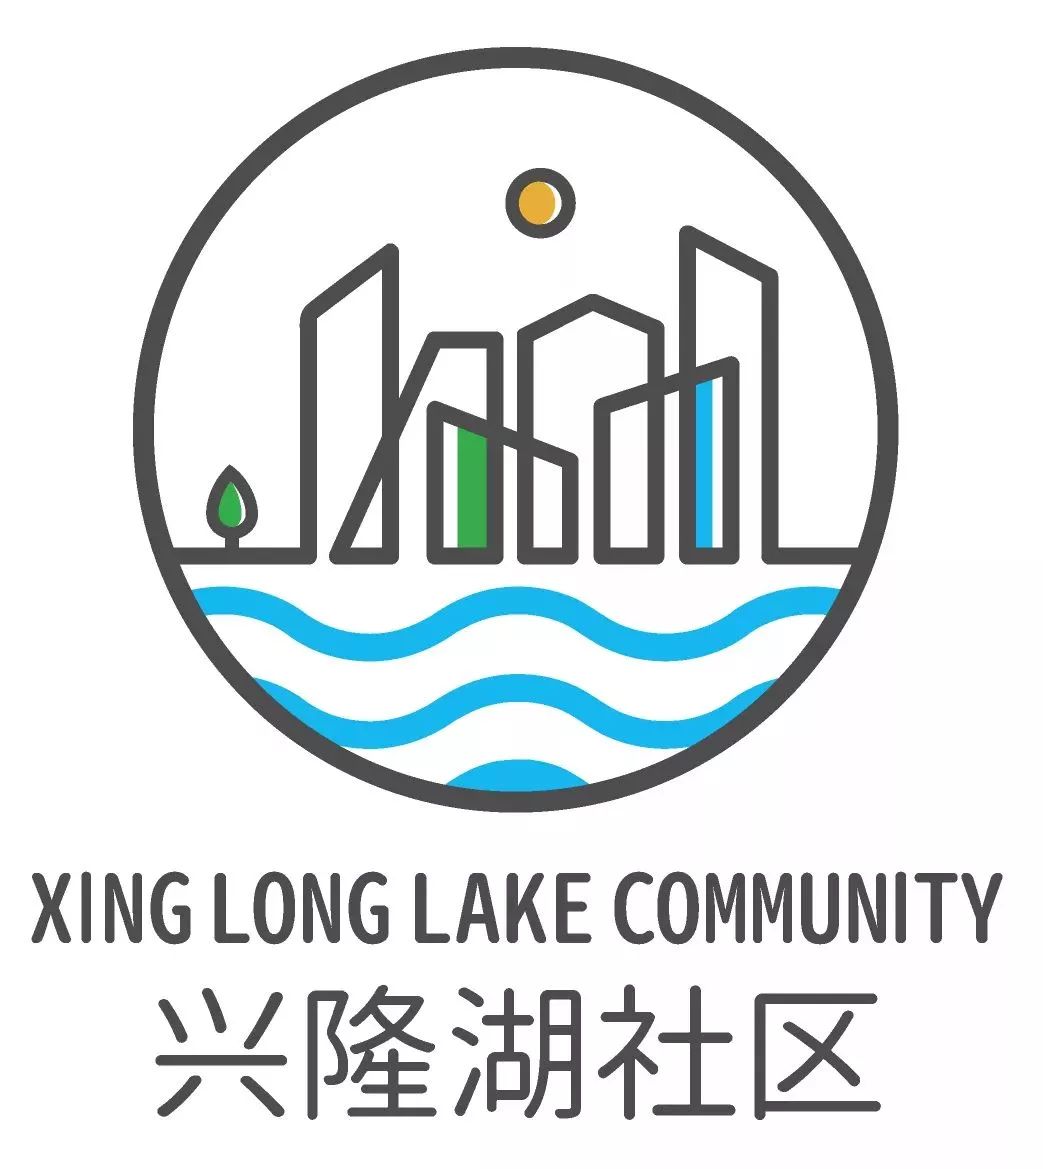 久等啦成都天府新区兴隆湖社区logo评选结果出炉